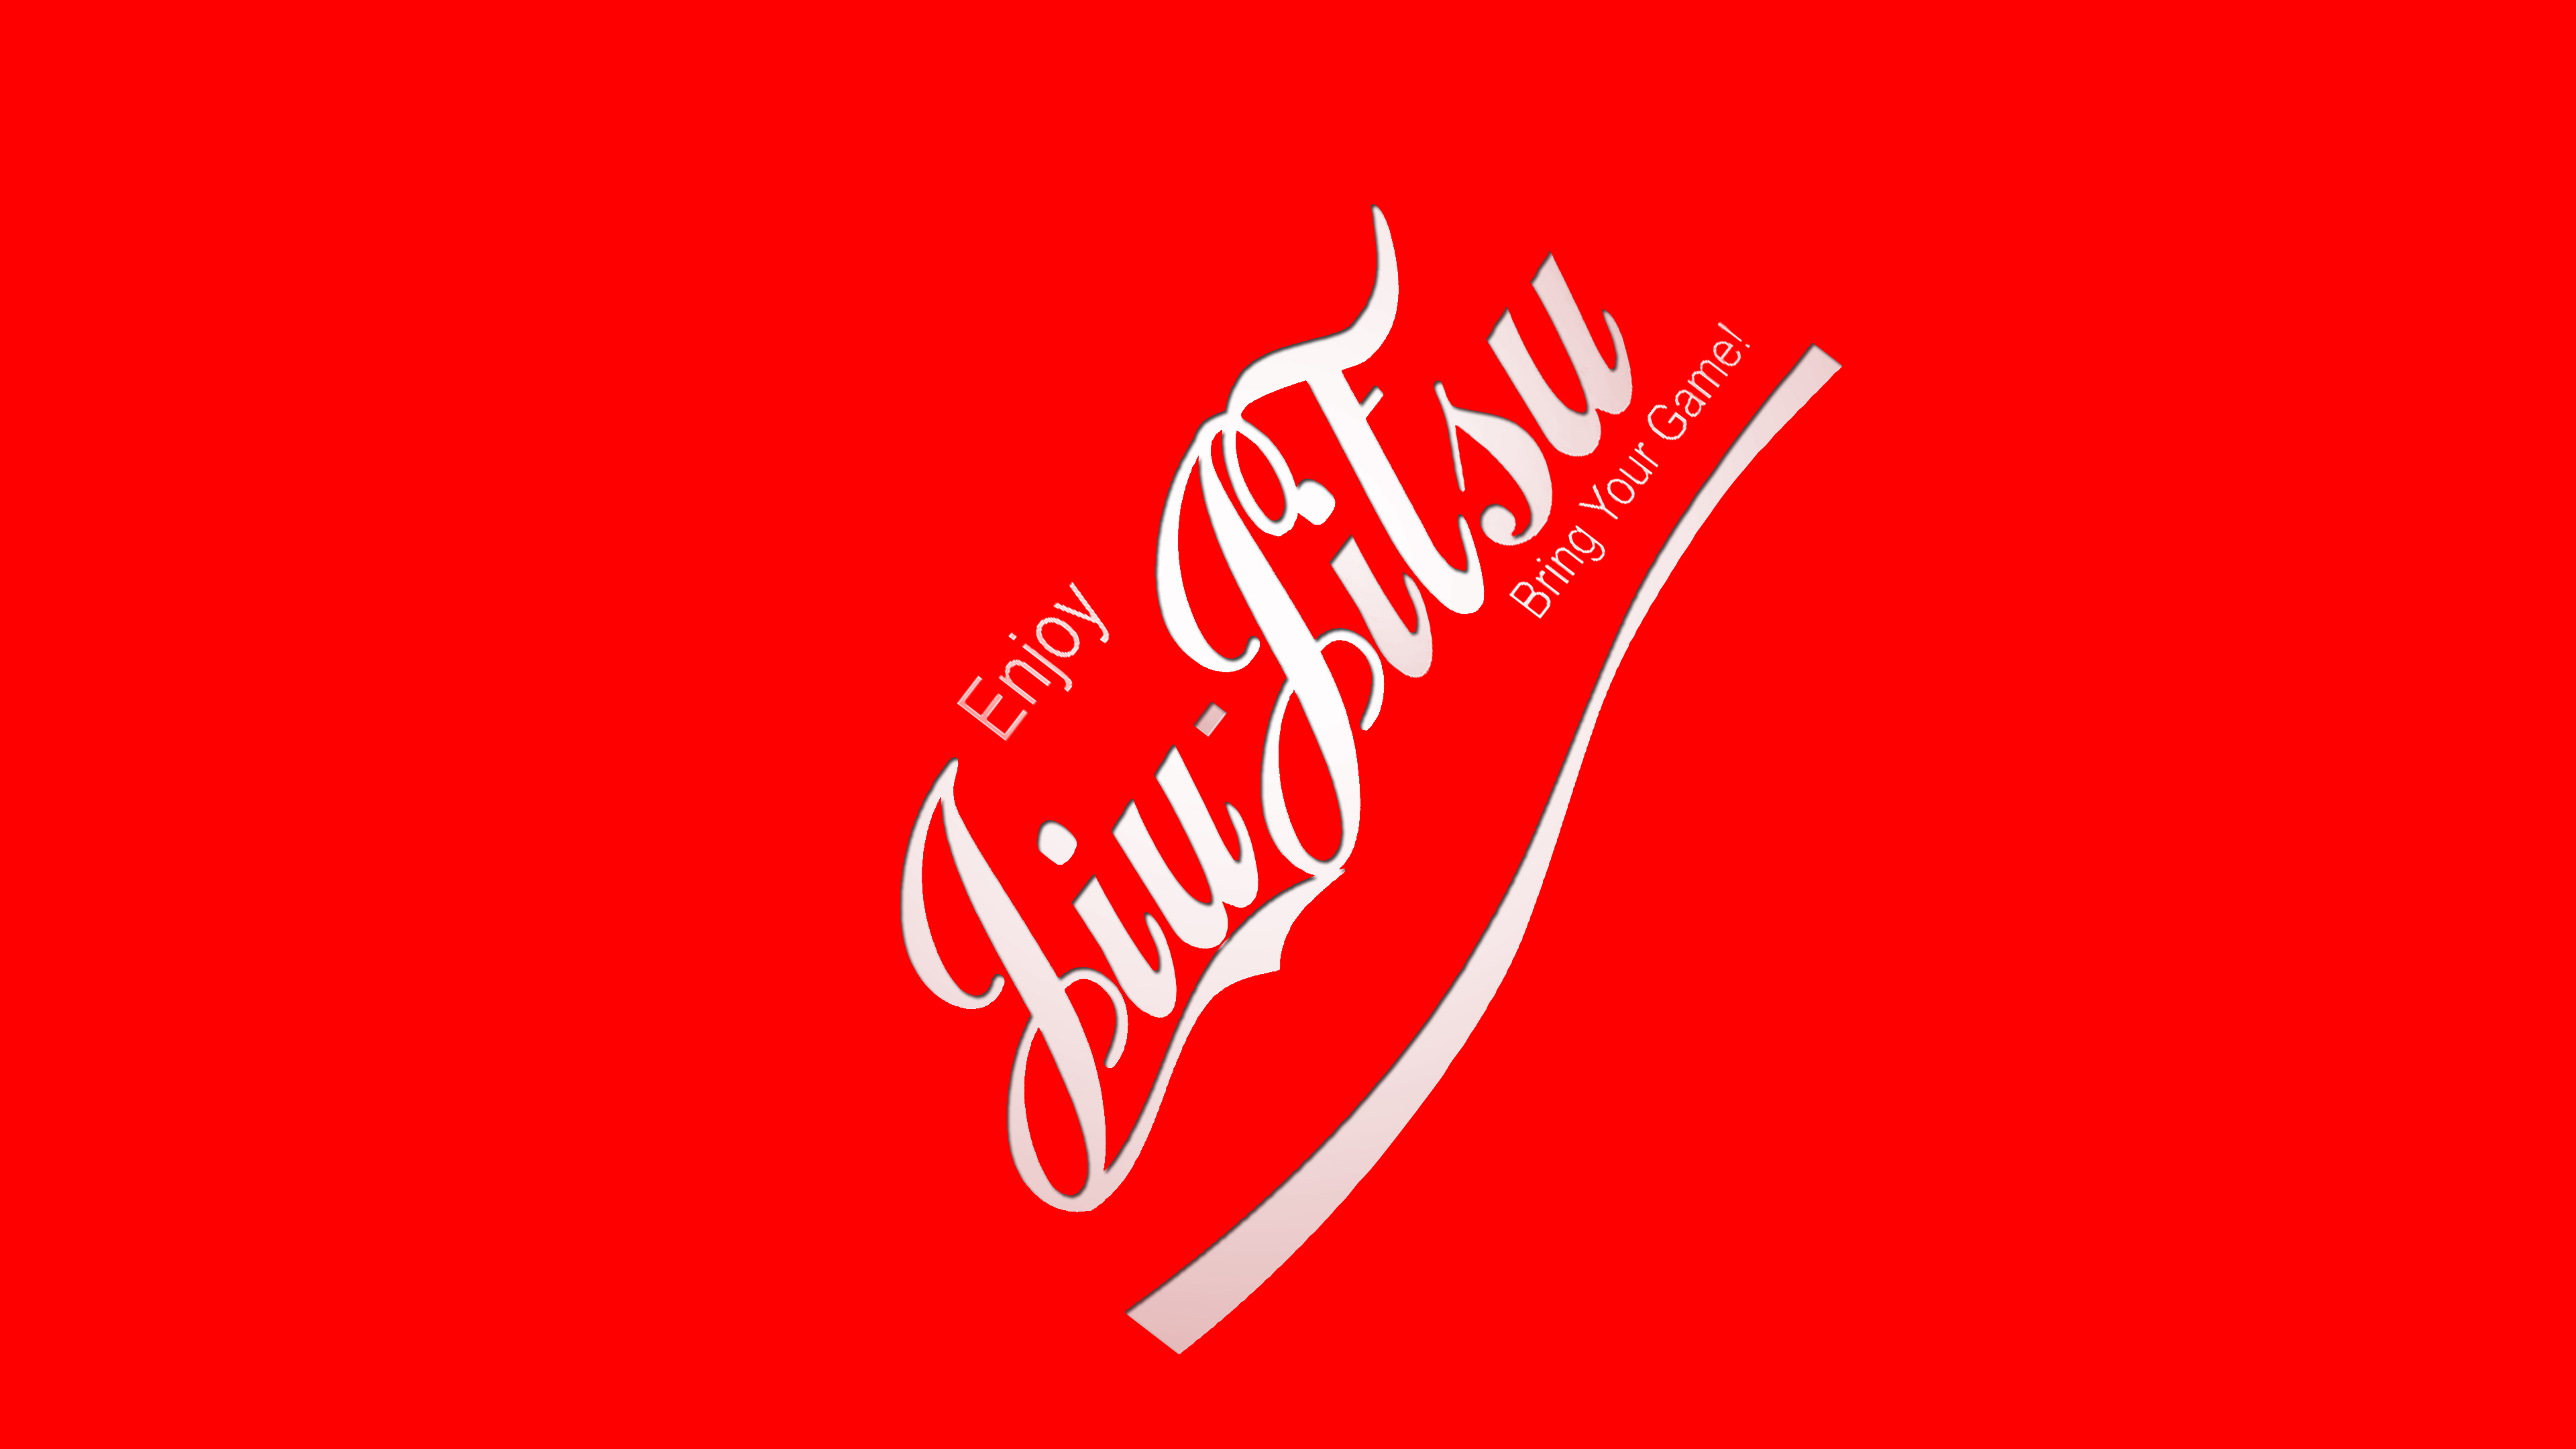 Coka Cola Jiu Jitsu Red And White Angle